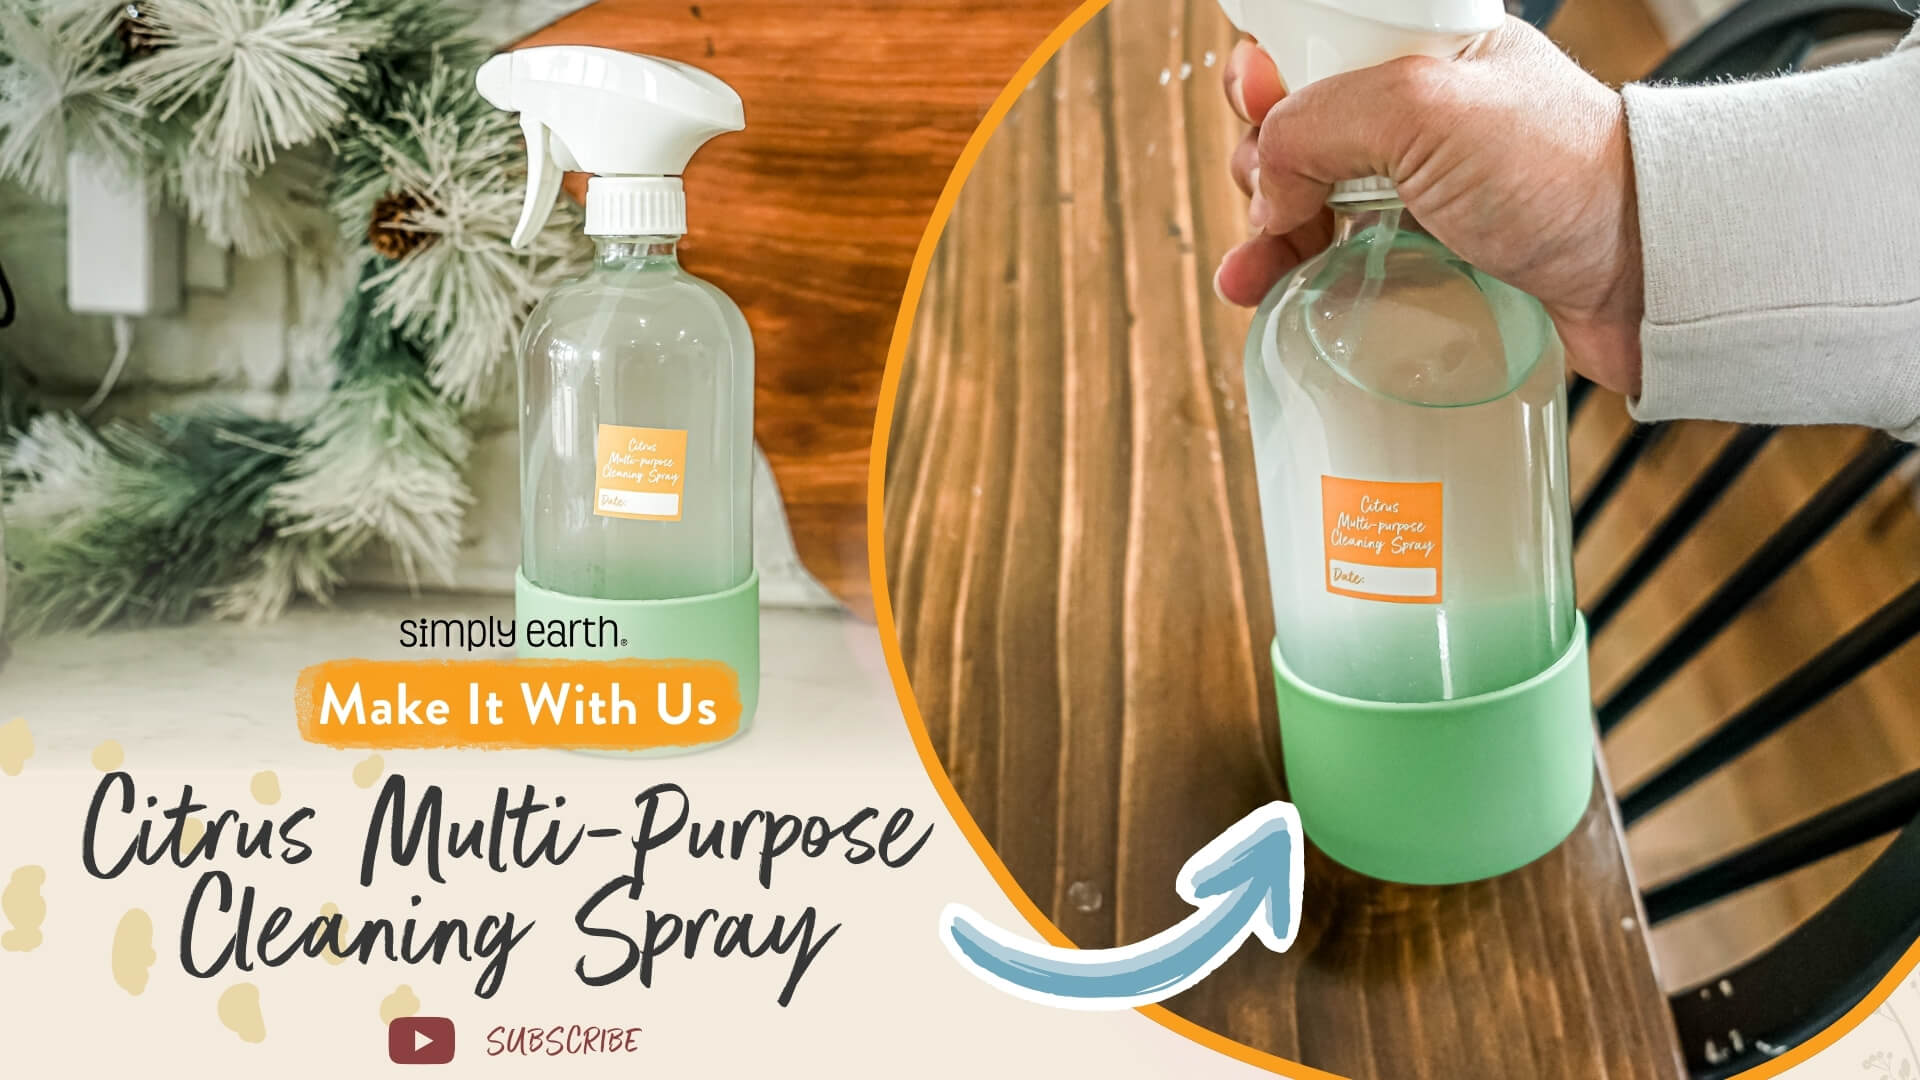 Citrus Multi-purpose Cleaning Spray